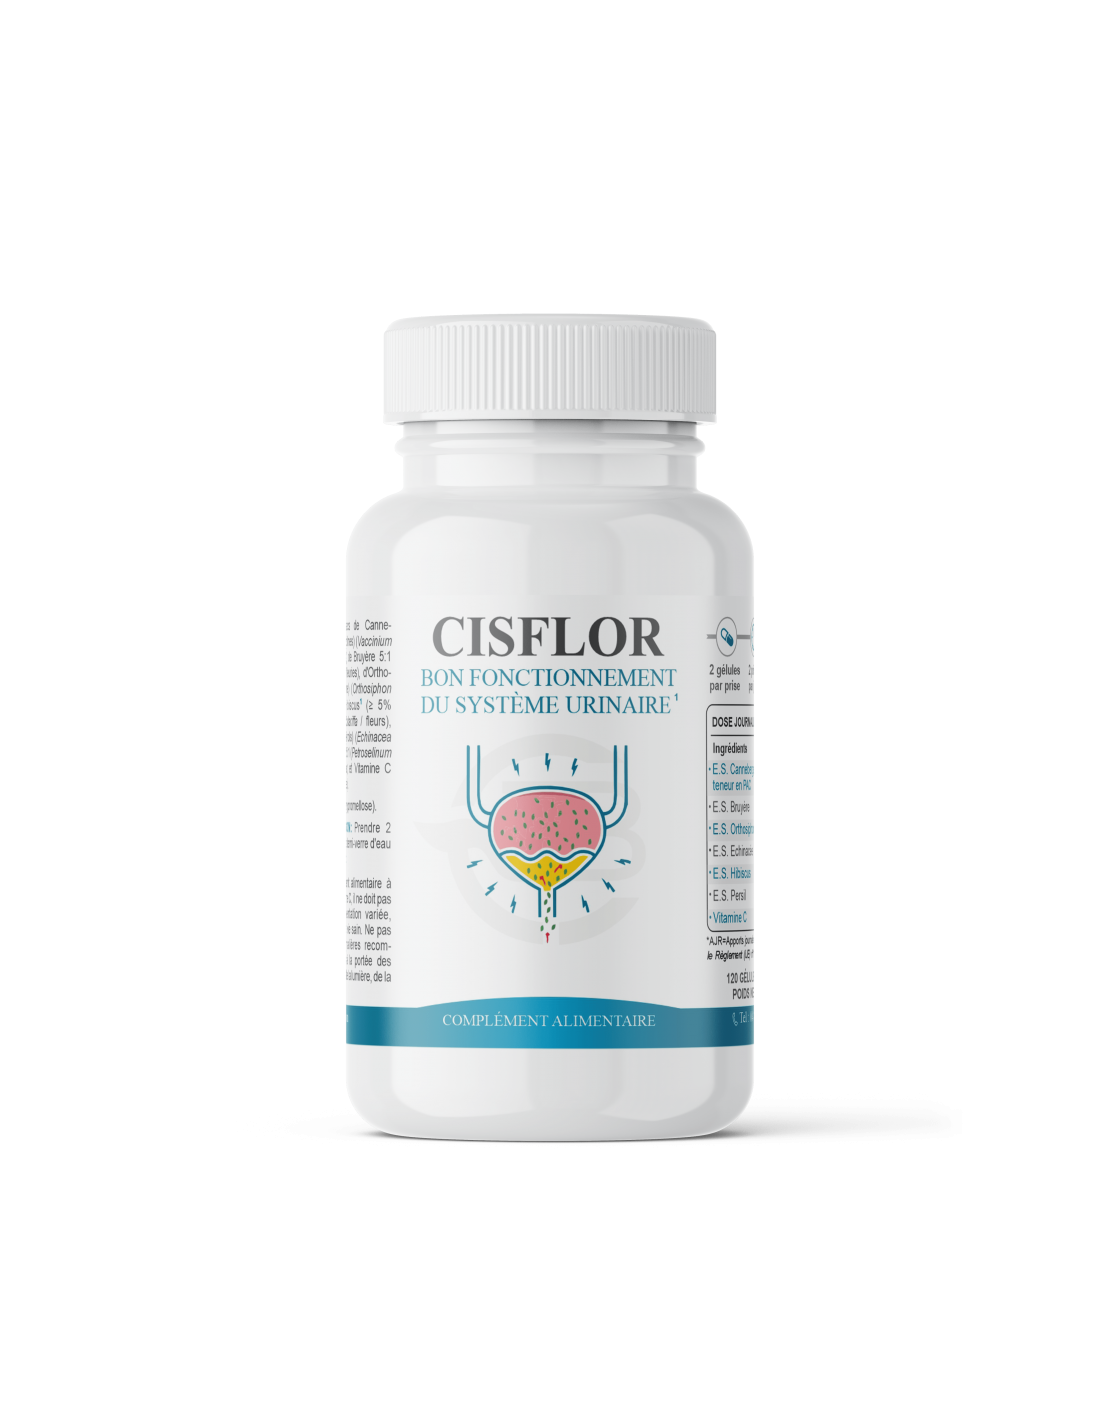 Cisflor – Confort urinaire - Formule concentrée en actifs végétaux